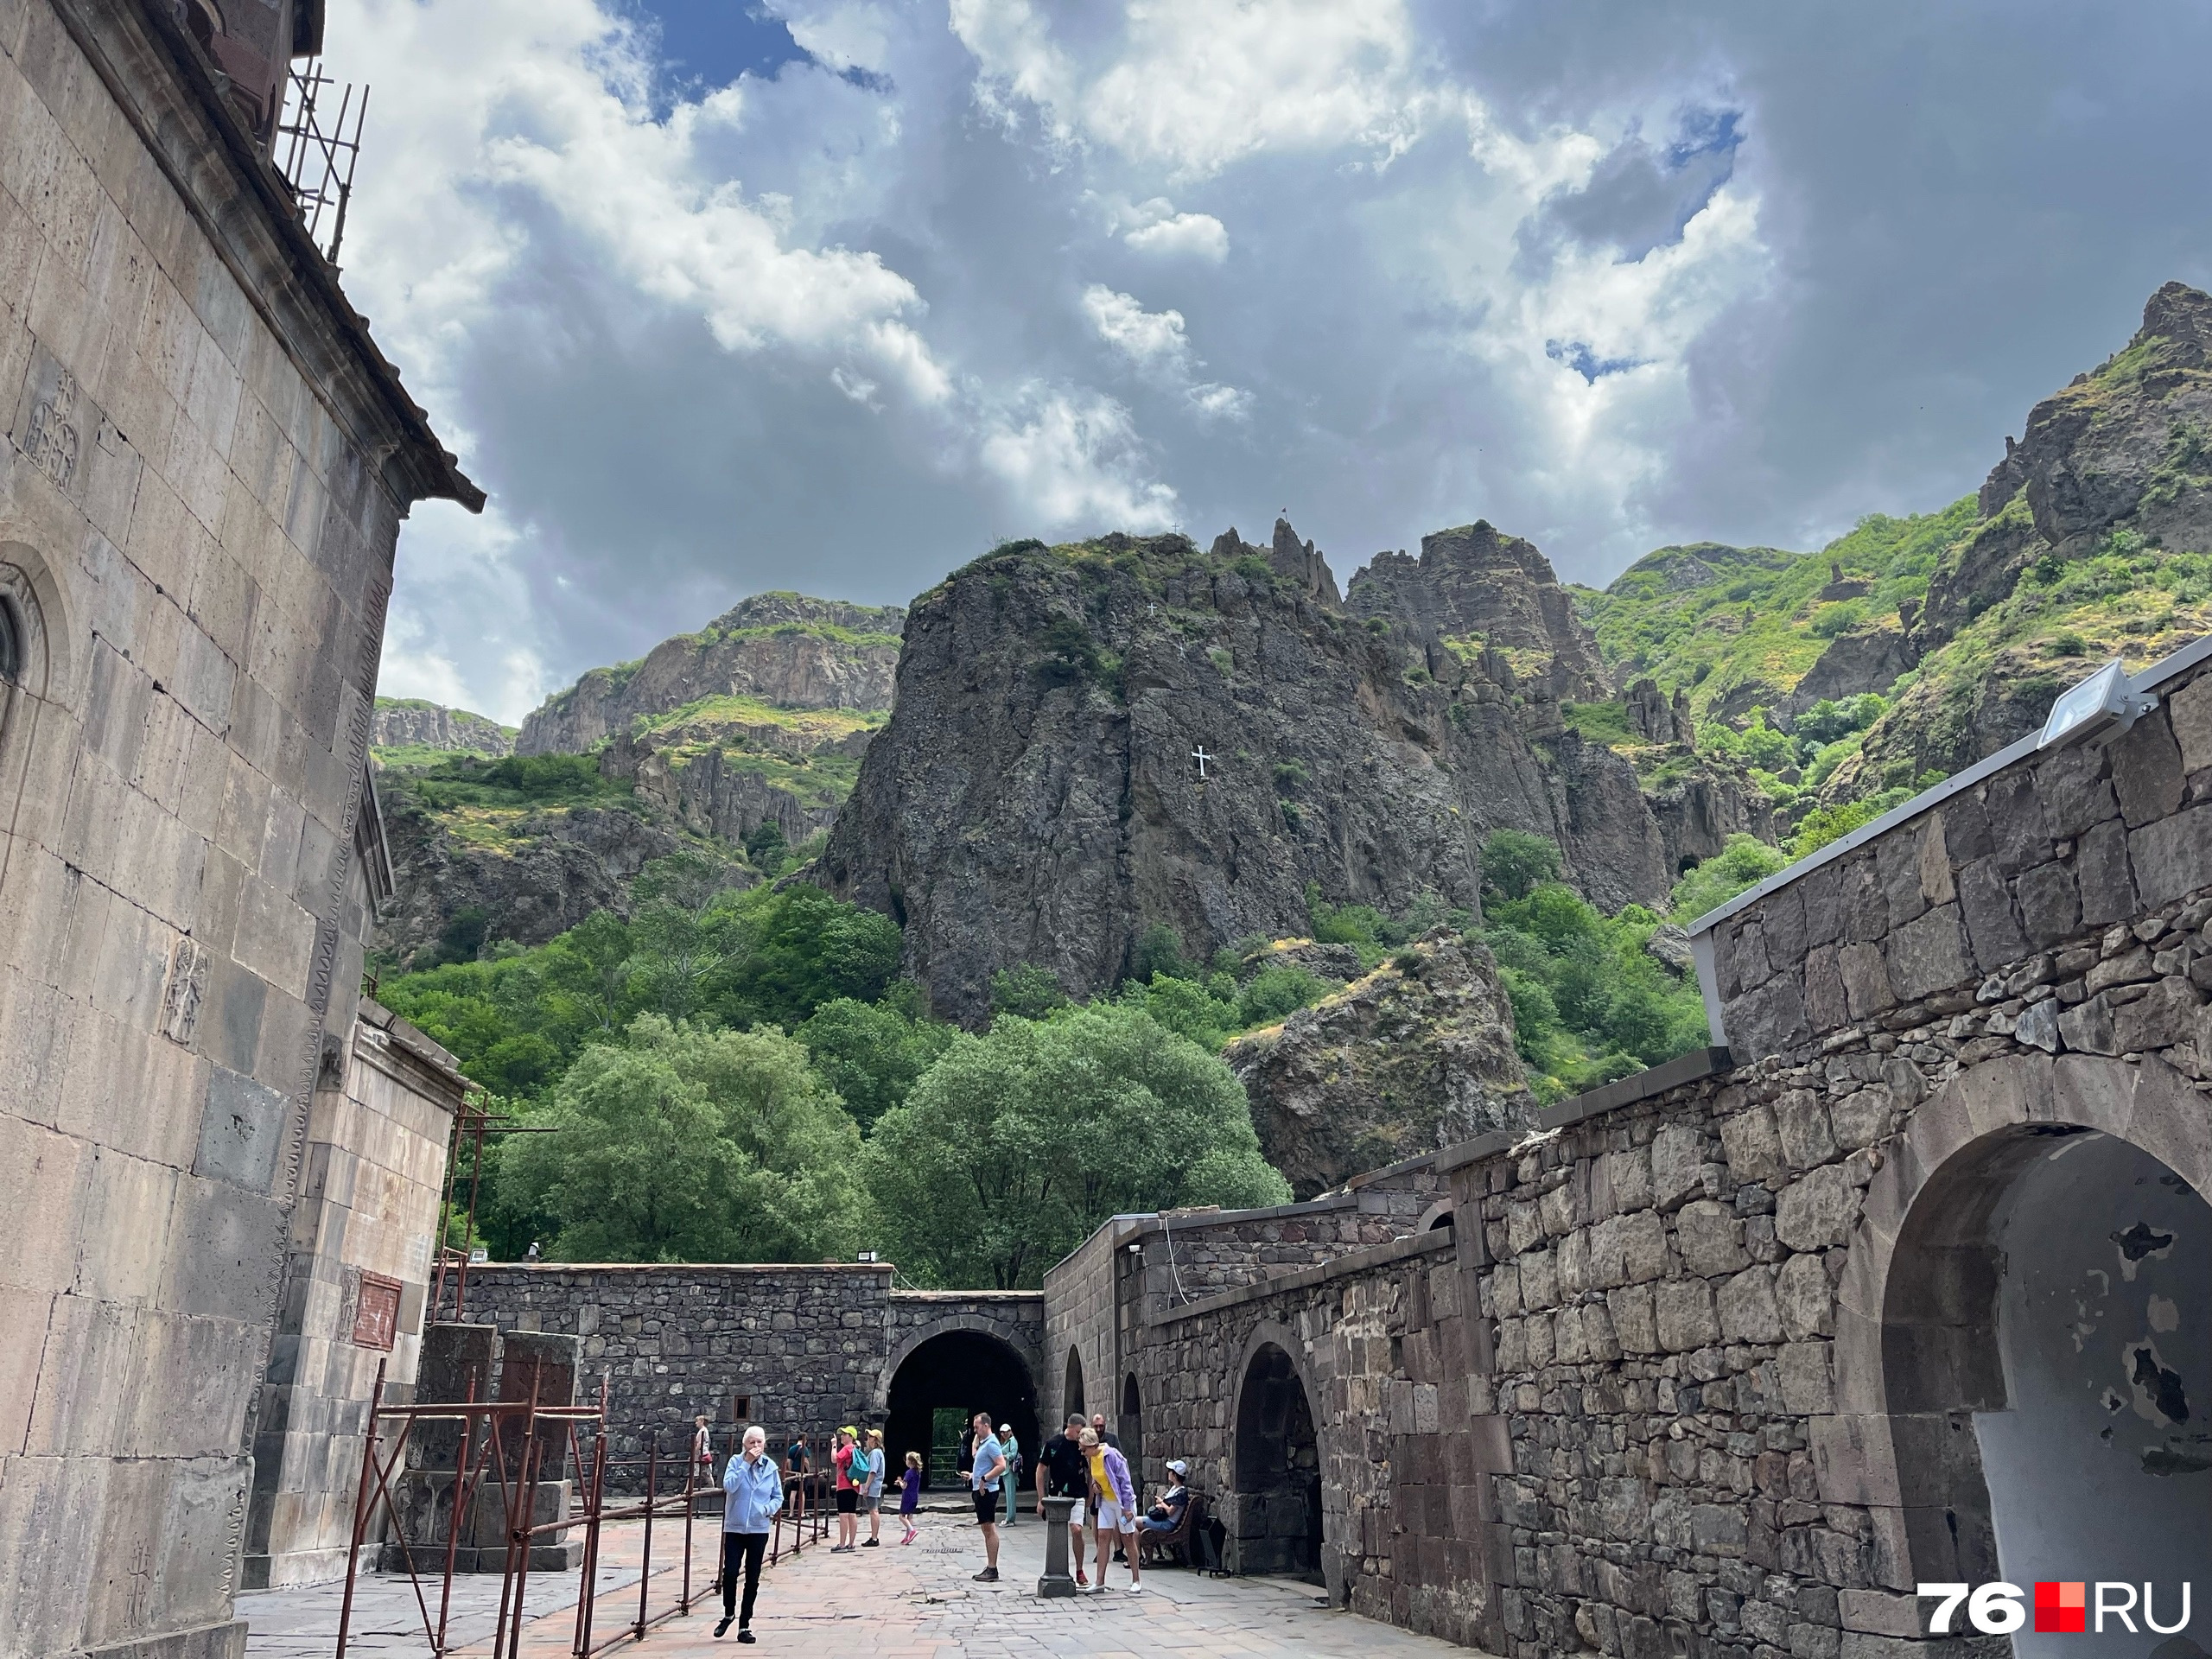 В православной Армении очень чтят религию. Страна стала первым христианским государством в мире. На фото можно увидеть крест посреди скалы